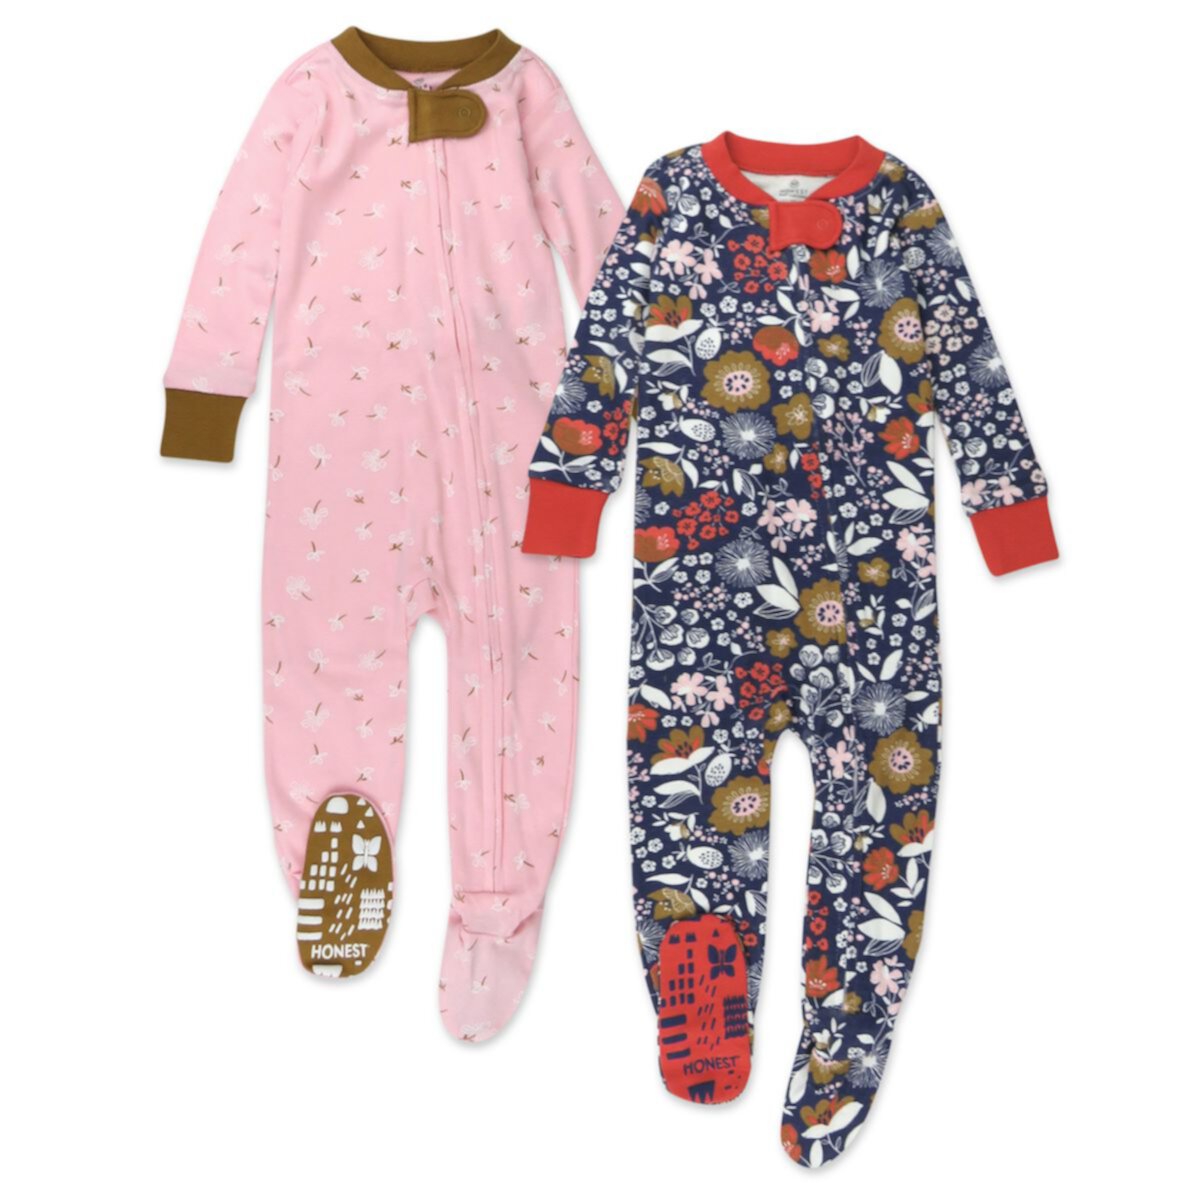 Baby Girl HONEST BABY CLOTHING Органическая пижама со стопами, 2 шт. HONEST BABY CLOTHING